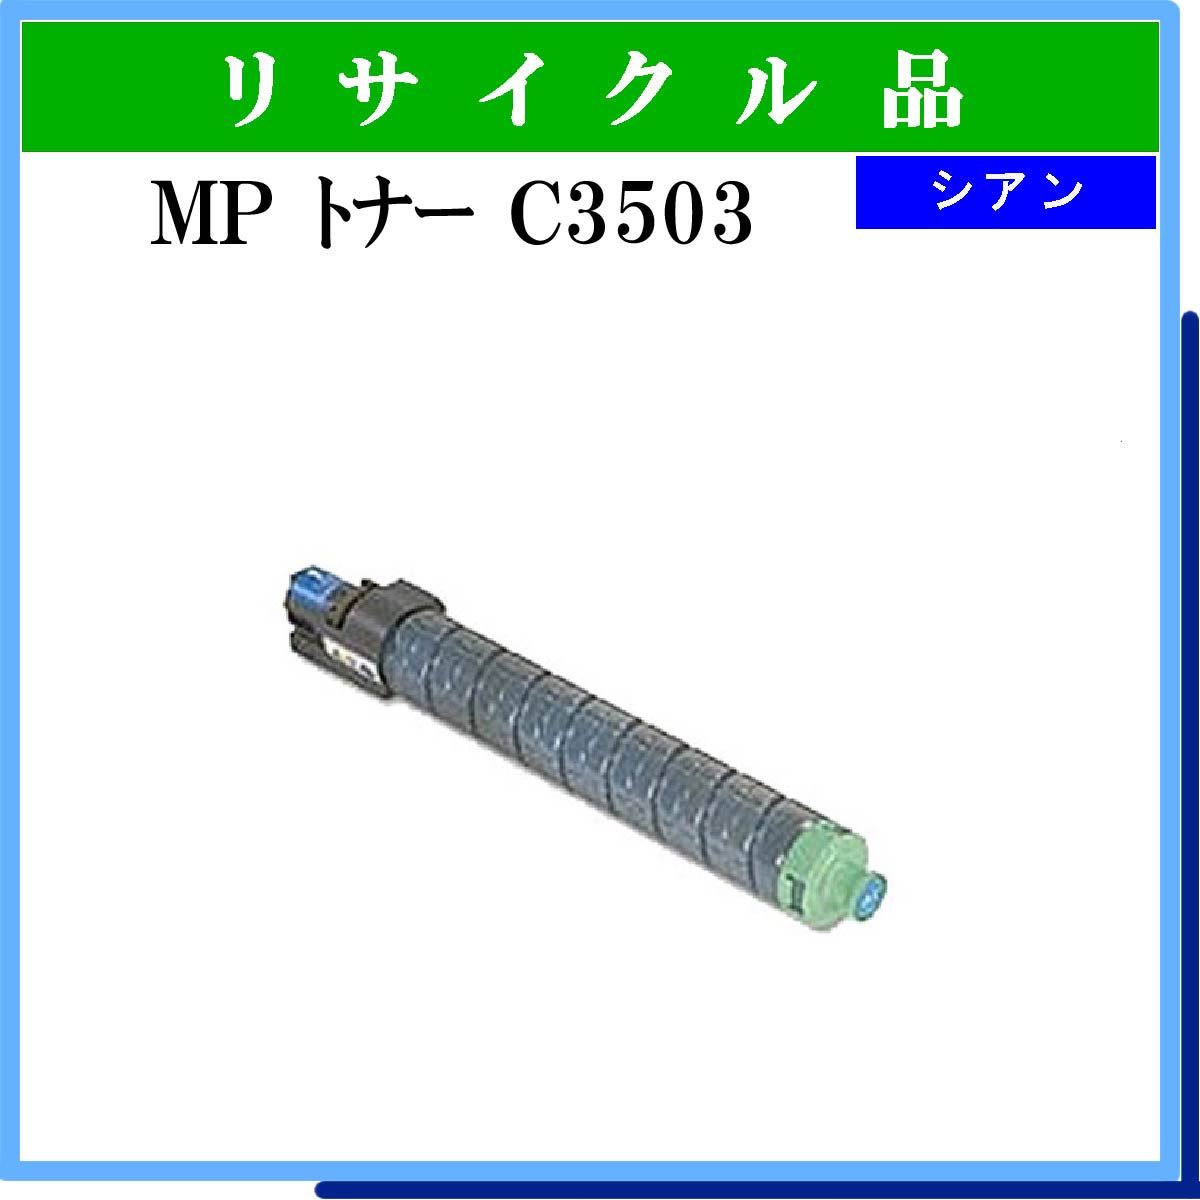 MP ﾄﾅｰ C3503 ｼｱﾝ - ウインドウを閉じる